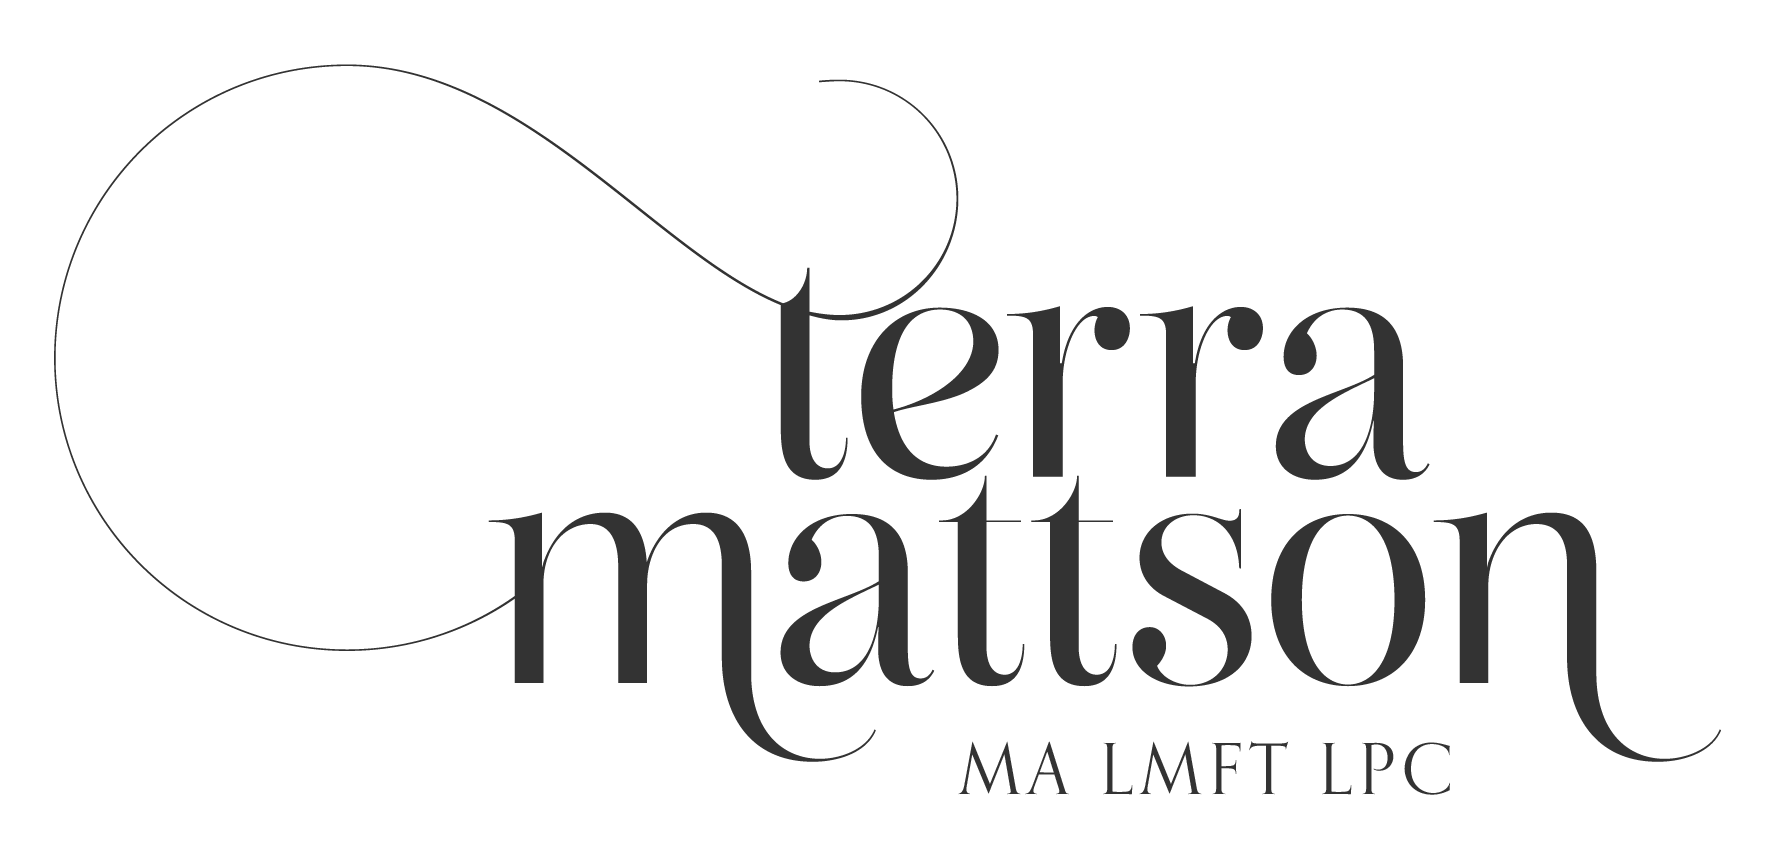 Terra Mattson M.A. LMFT, LPC